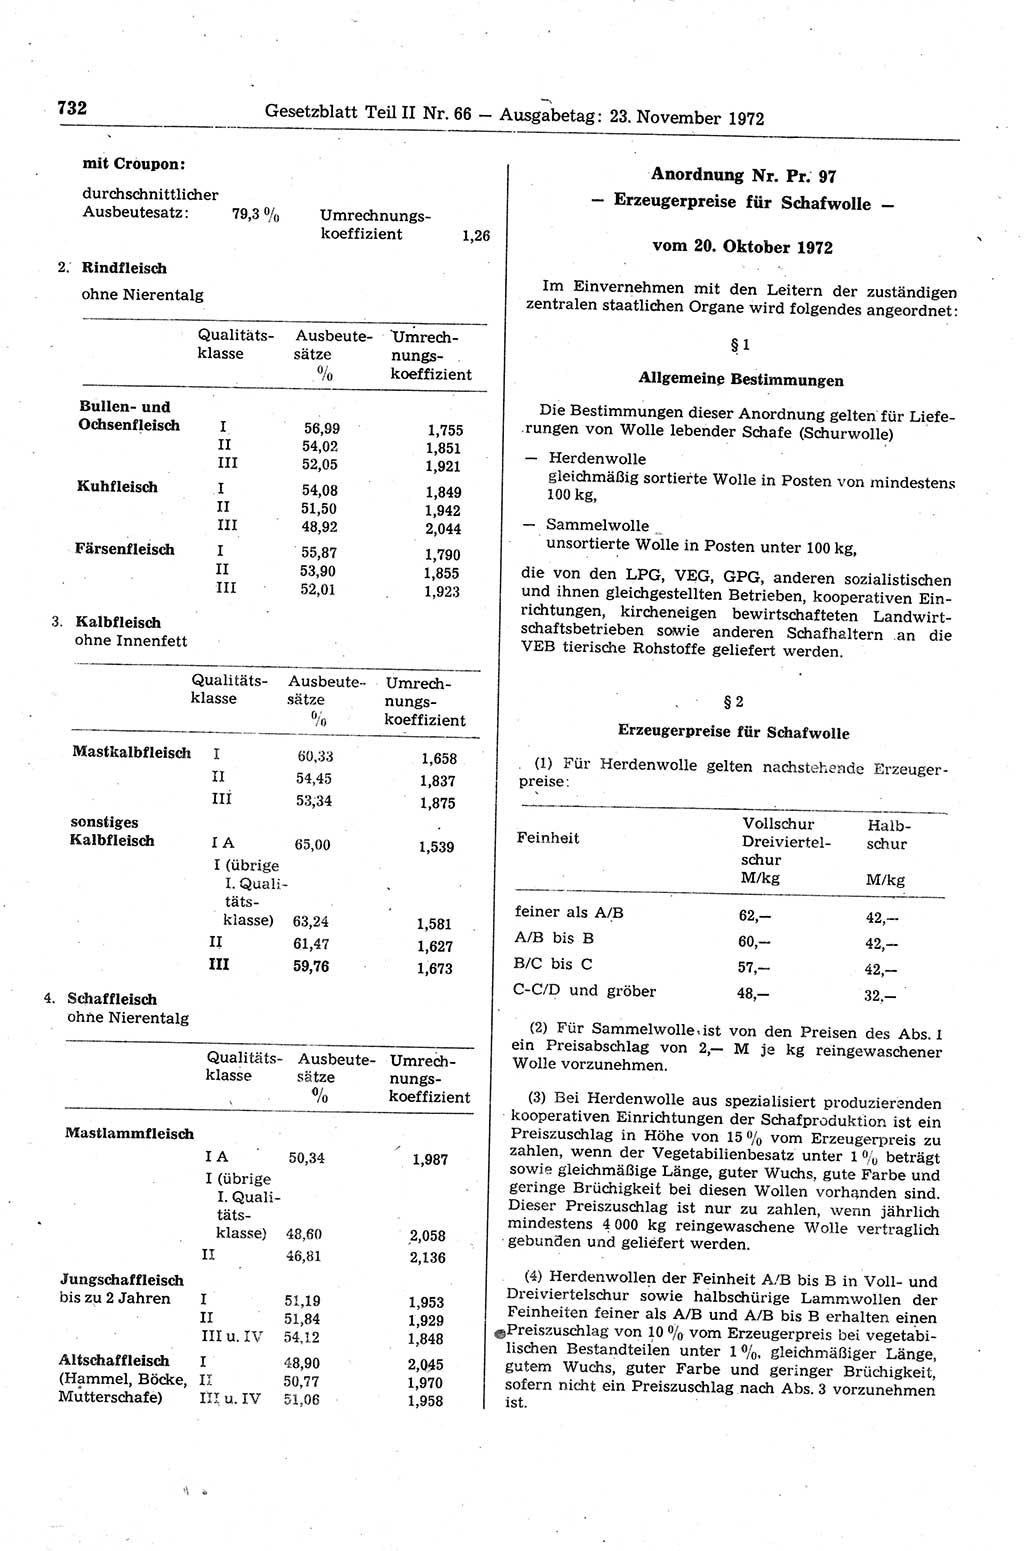 Gesetzblatt (GBl.) der Deutschen Demokratischen Republik (DDR) Teil ⅠⅠ 1972, Seite 732 (GBl. DDR ⅠⅠ 1972, S. 732)